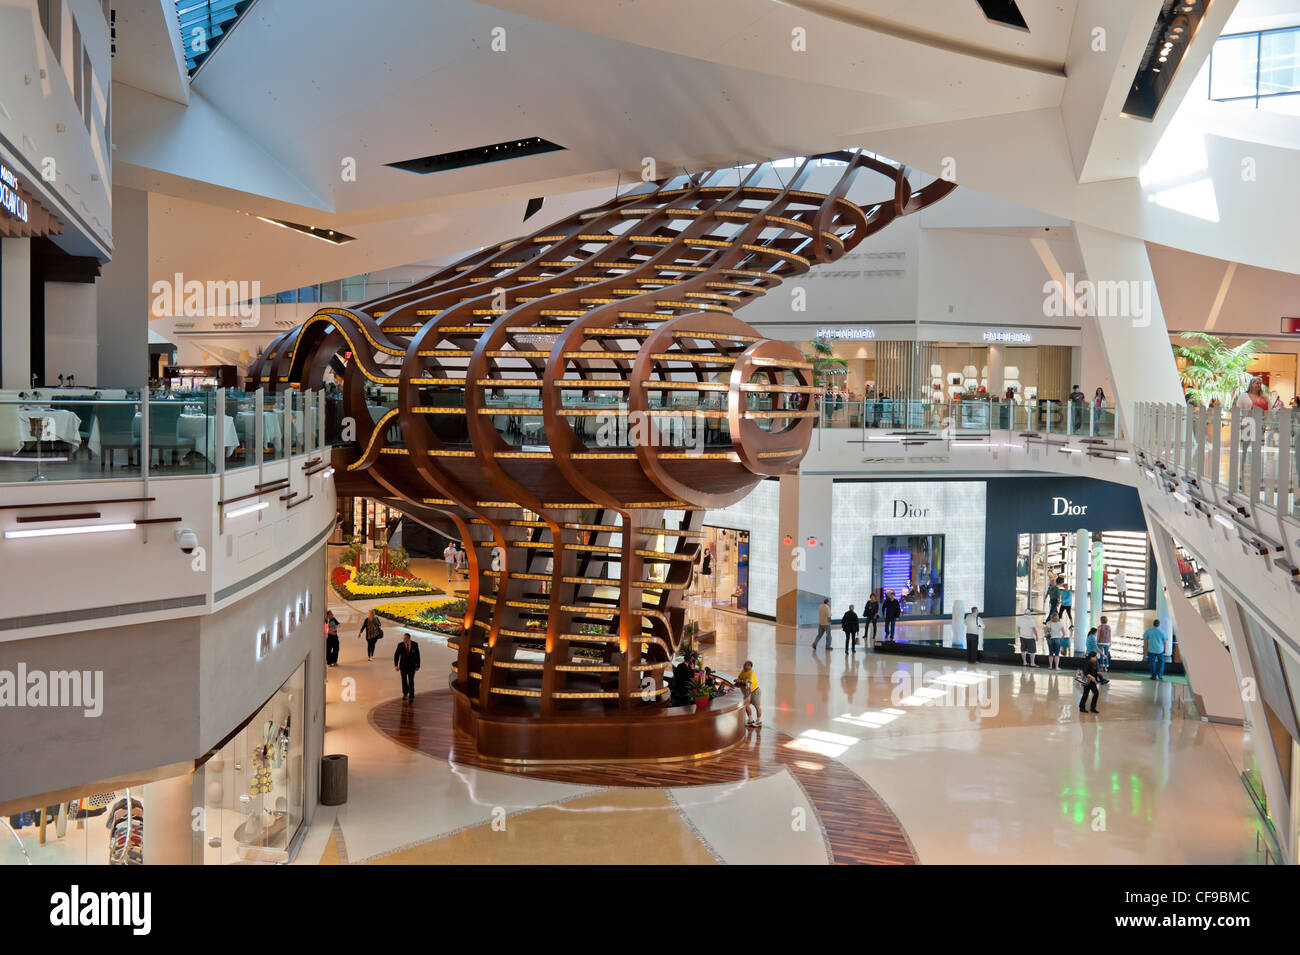 Kristalle-Luxus-Shopping-Mall at CityCenter, Paradies, Las Vegas Strip, USA  Stockfotografie - Alamy